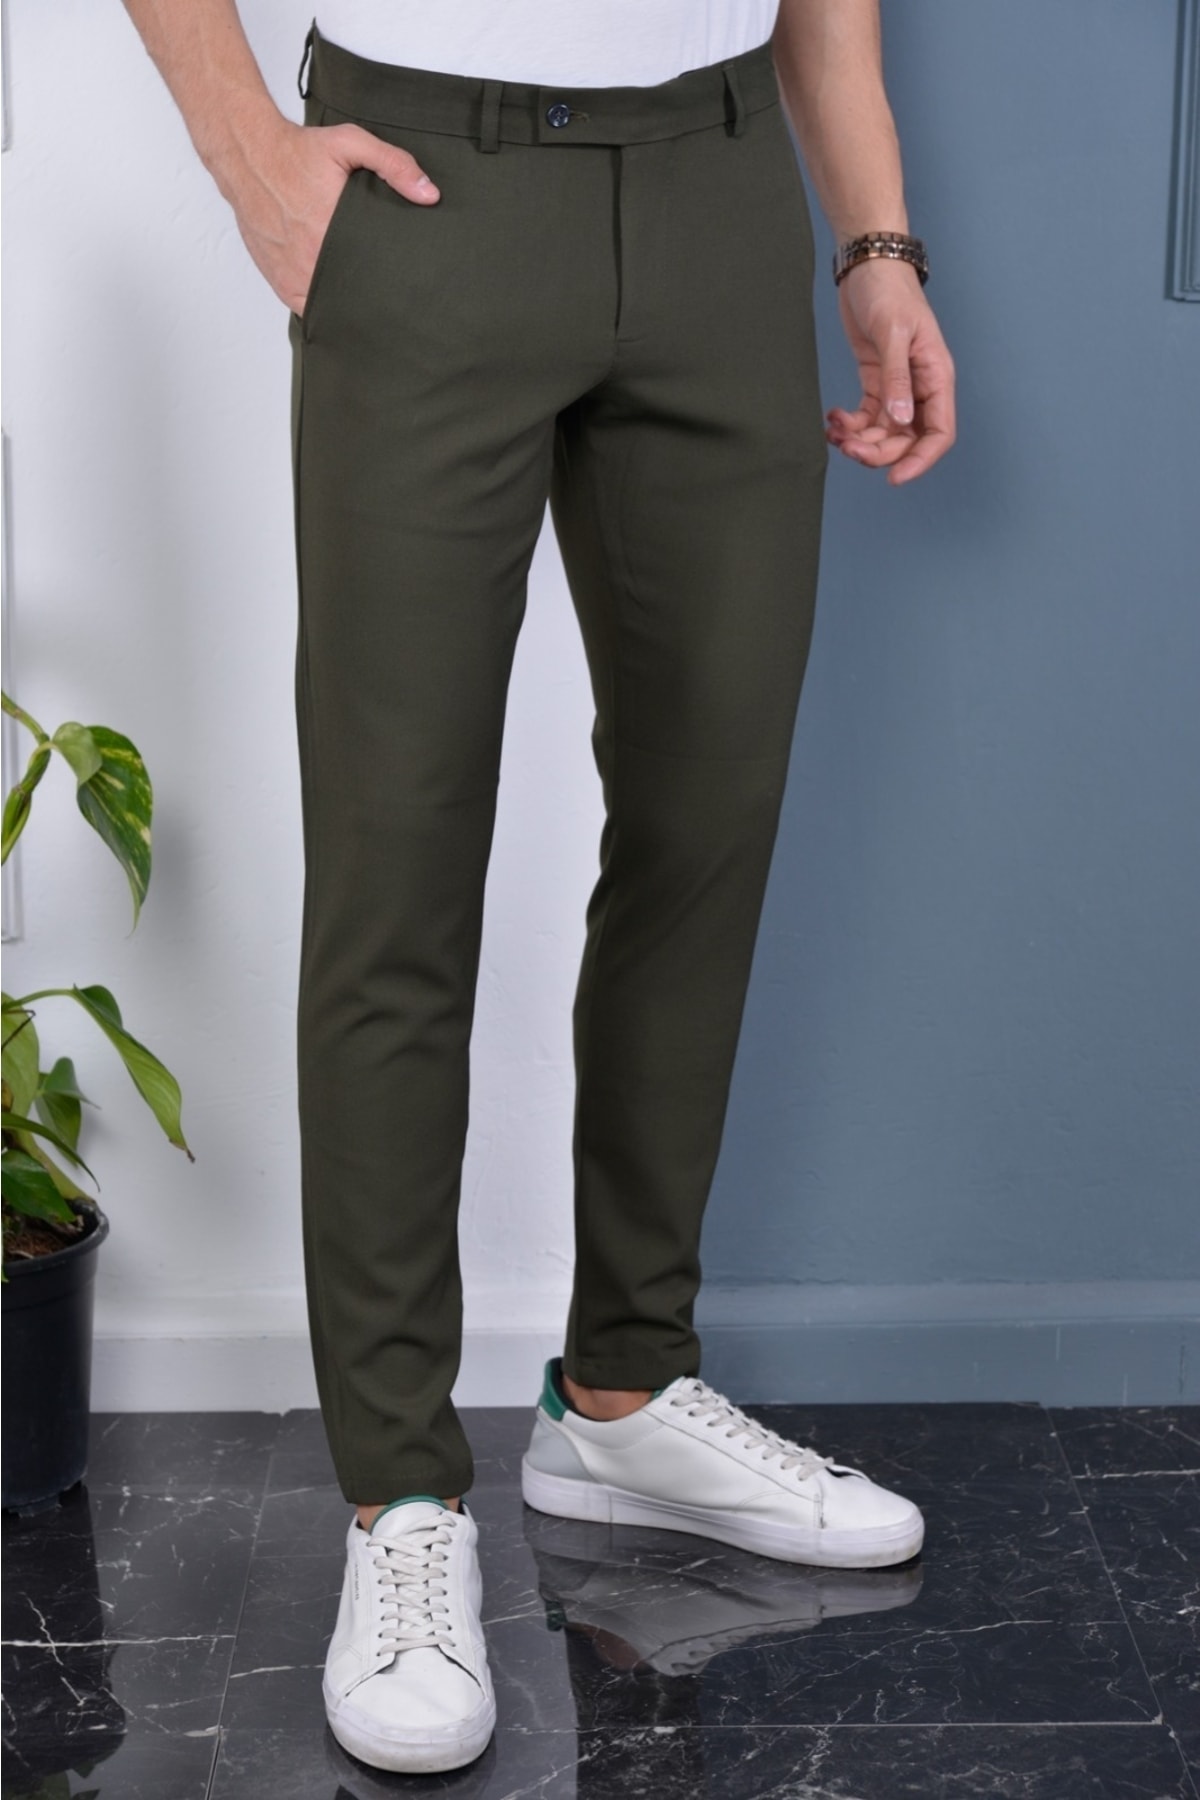 Bürke Erkek Haki Renk Italyan Kesim Kaliteli Esnek Likralı Bilek Boy Kumaş Pantolon